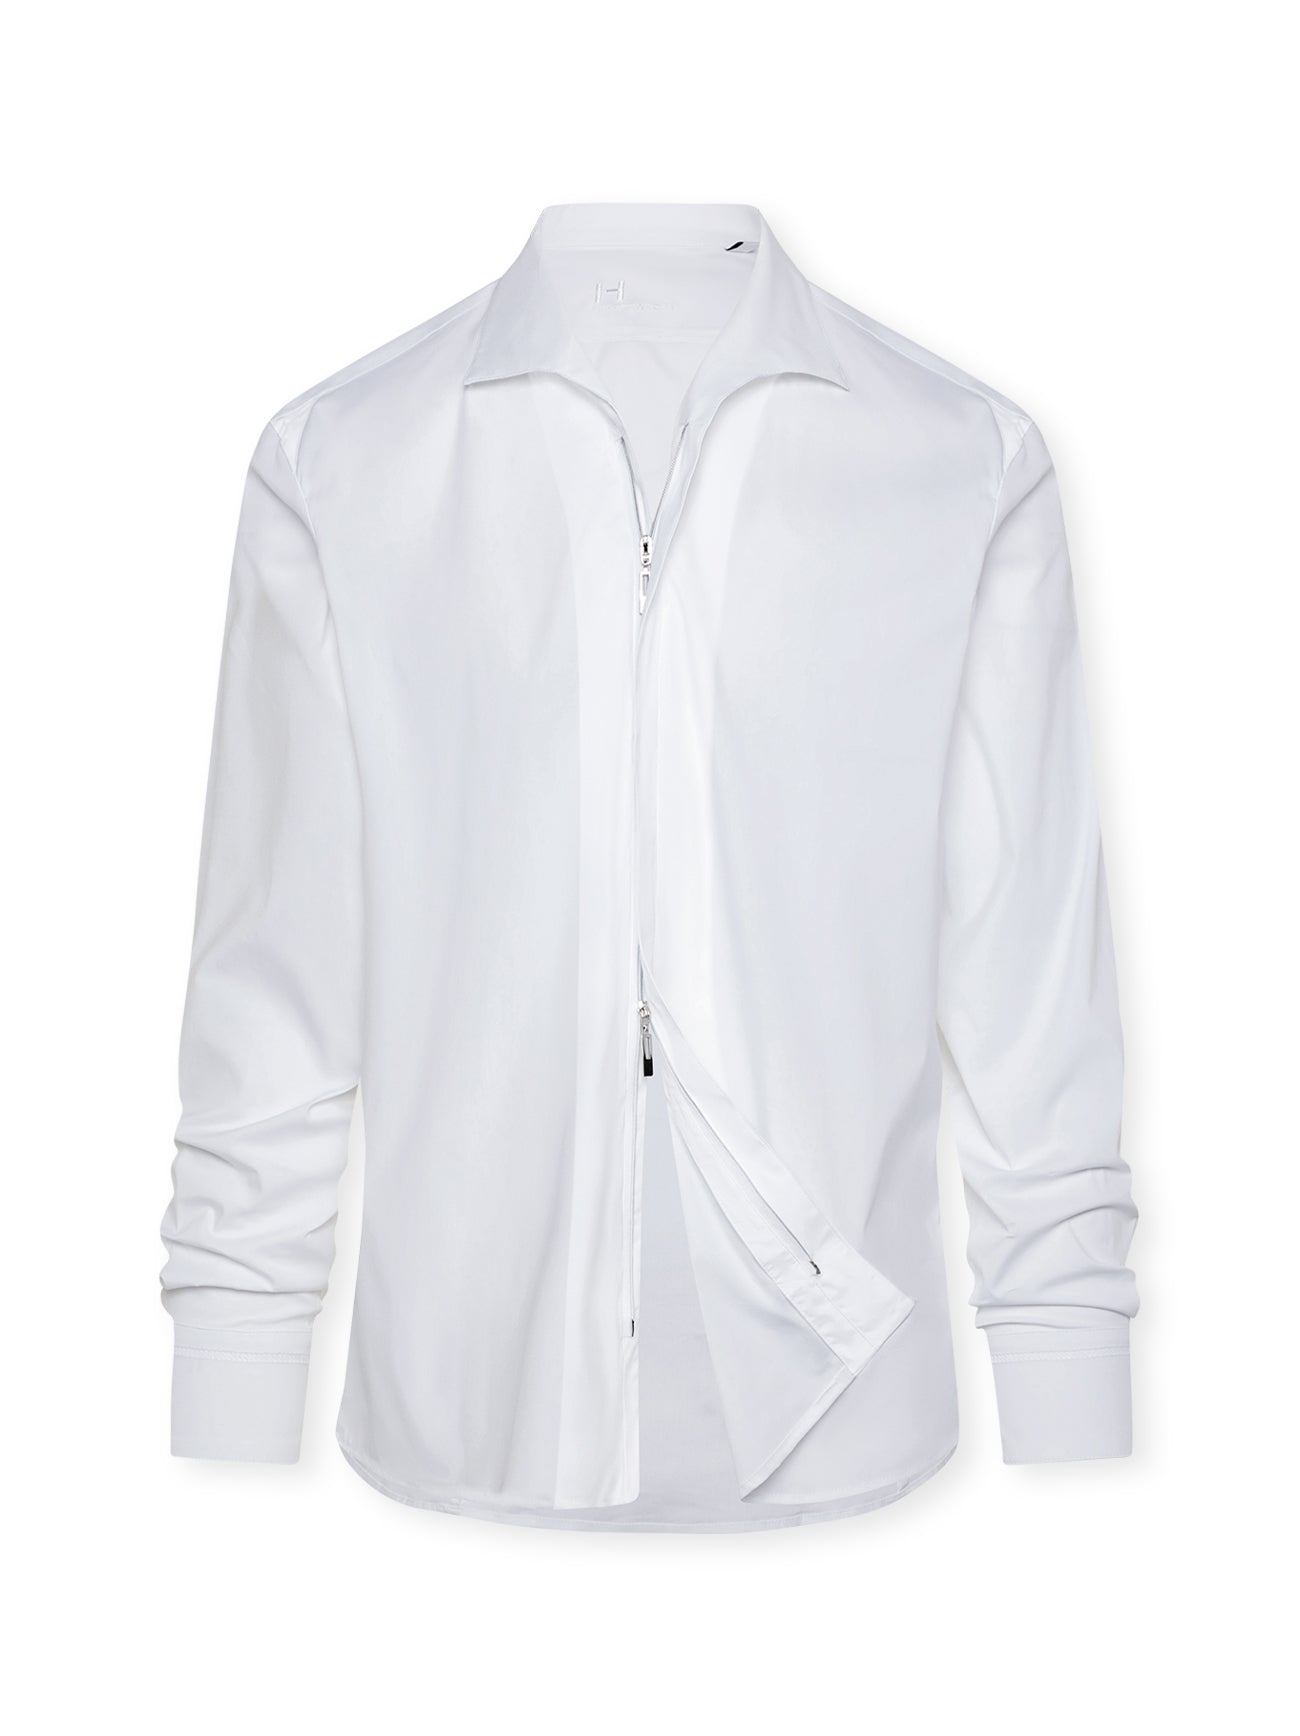 NEU: Sangro weiß - Reißverschlusshemd mit Resort-Kragen